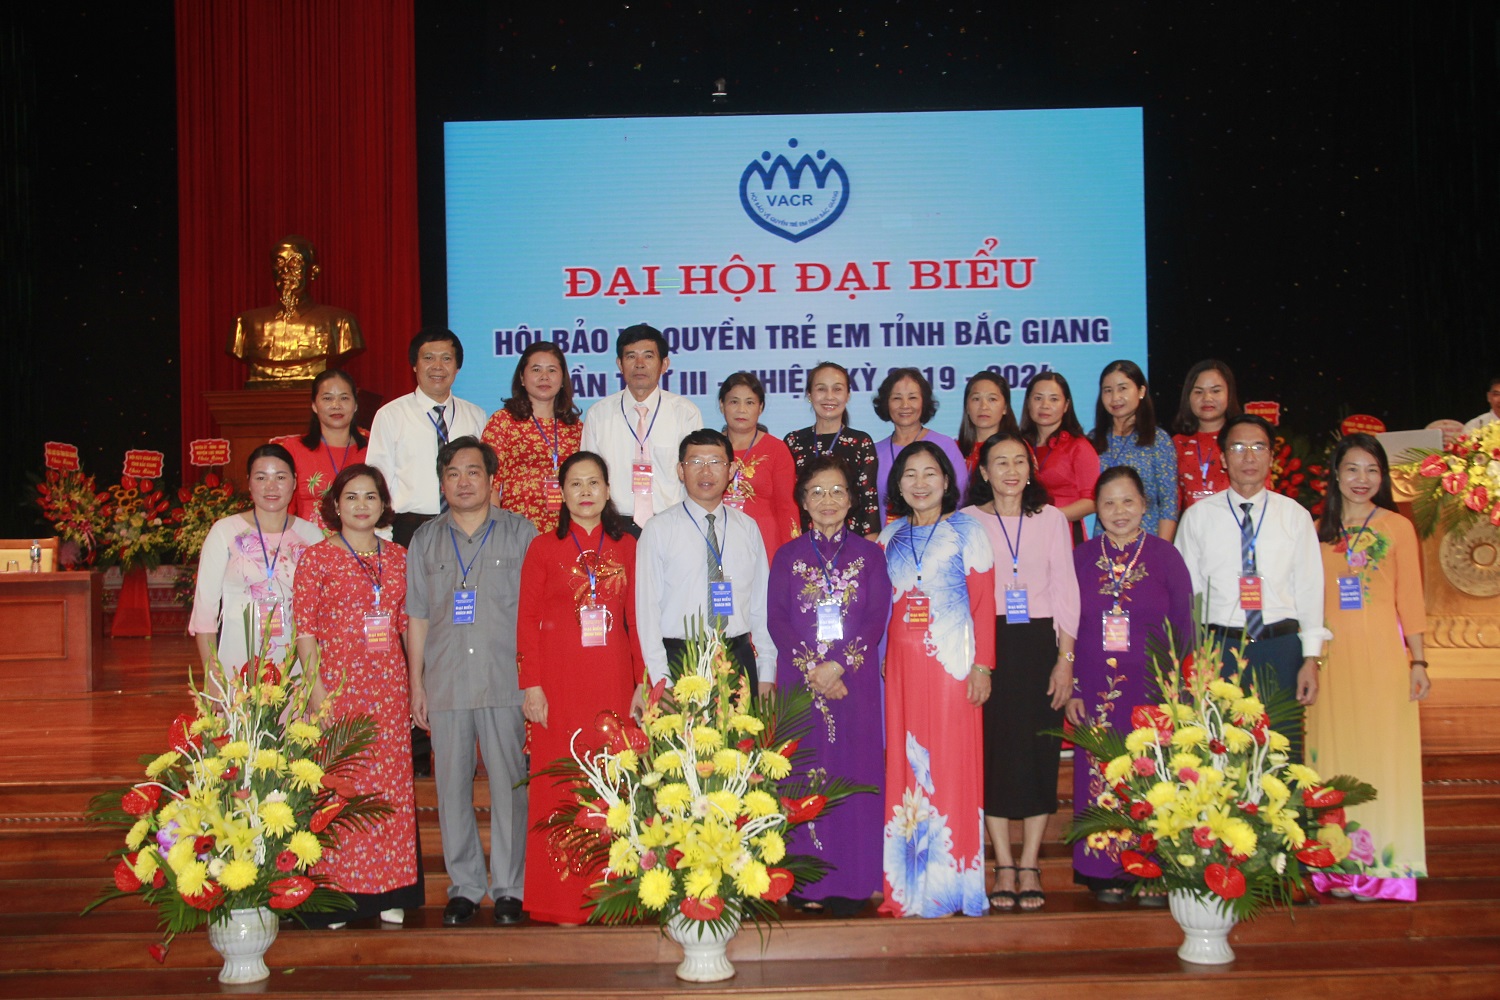 Đại hội đại biểu Hội Bảo vệ quyền trẻ em tỉnh Bắc Giang lần thứ III